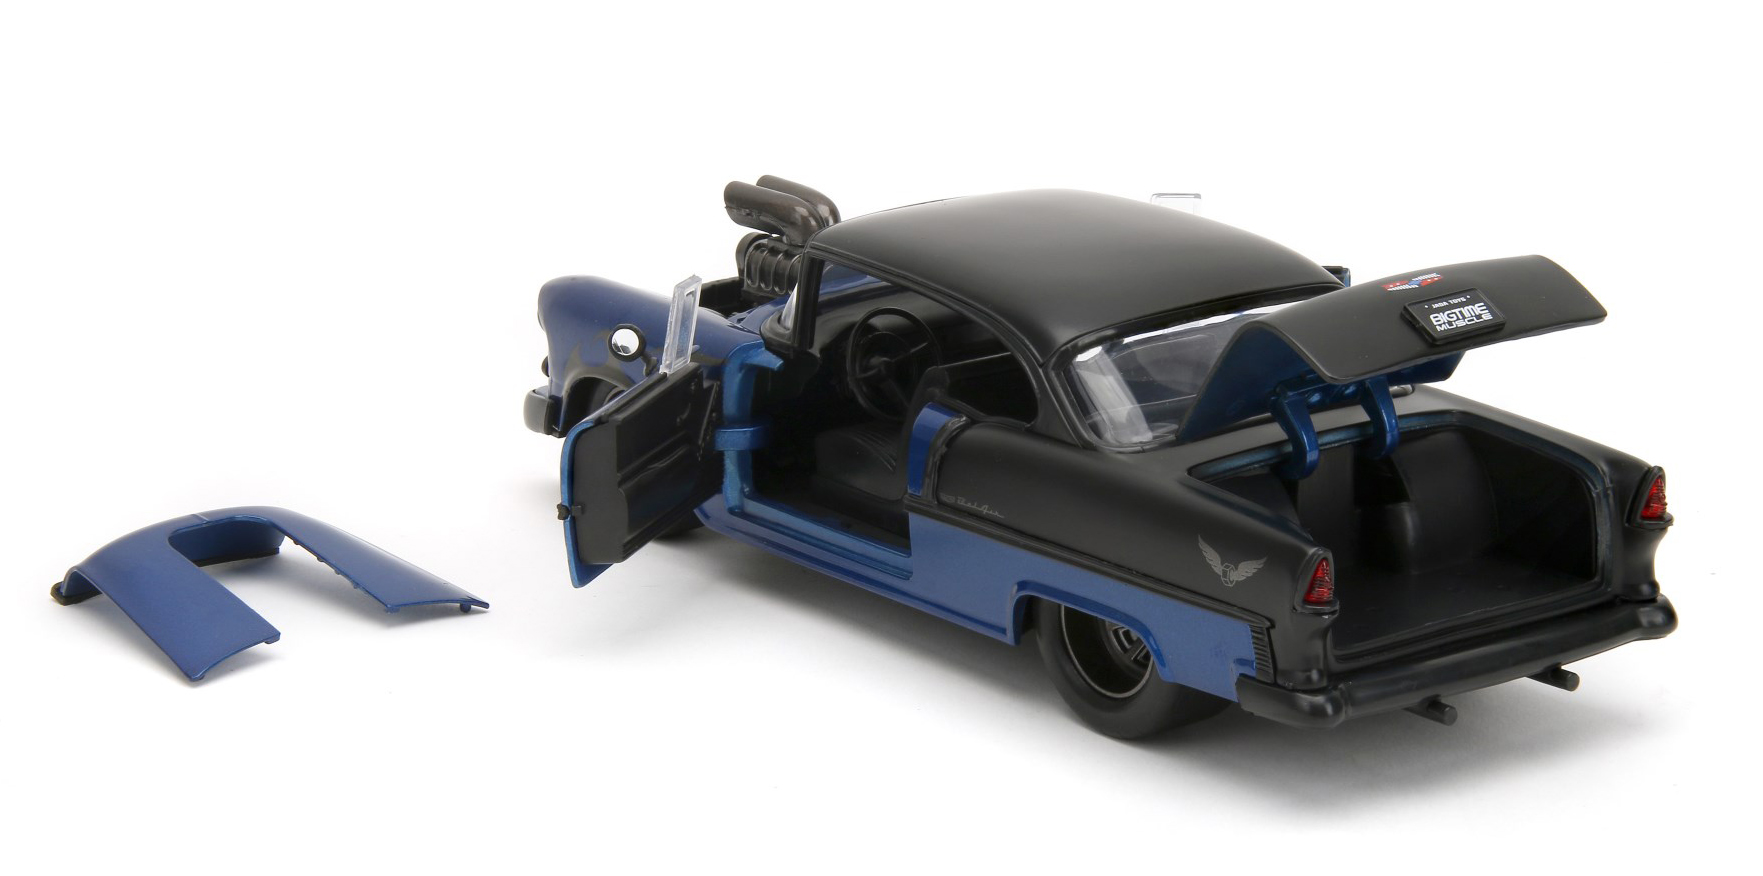 Modell eines Chevy Bel Air aus dem Jahre 1955. Das Coupe ist in dunkelblau / schwarz lackiert und hat seitlich Flammenzeichen die am Vorderrad angehen und zur Türe hin zulaufen. Die Motorhaube ist mit einem riesigen Luftansaugstutzen versehen. Die Motorhaube lässt sich zum Zeigen des Big Blocks abnehmen.  Dach, Kofferraumdeckel und die hintere Hälft sind, ebenso wie die sonst üblichen Chromringe um die Scheinwerfer und Chromstoßstangen, in Mattschwarz gehalten. Die Felgen sind in dunkelgrau lackiert. Kofferraum und Türen lassen sich am Modell öffnen. 